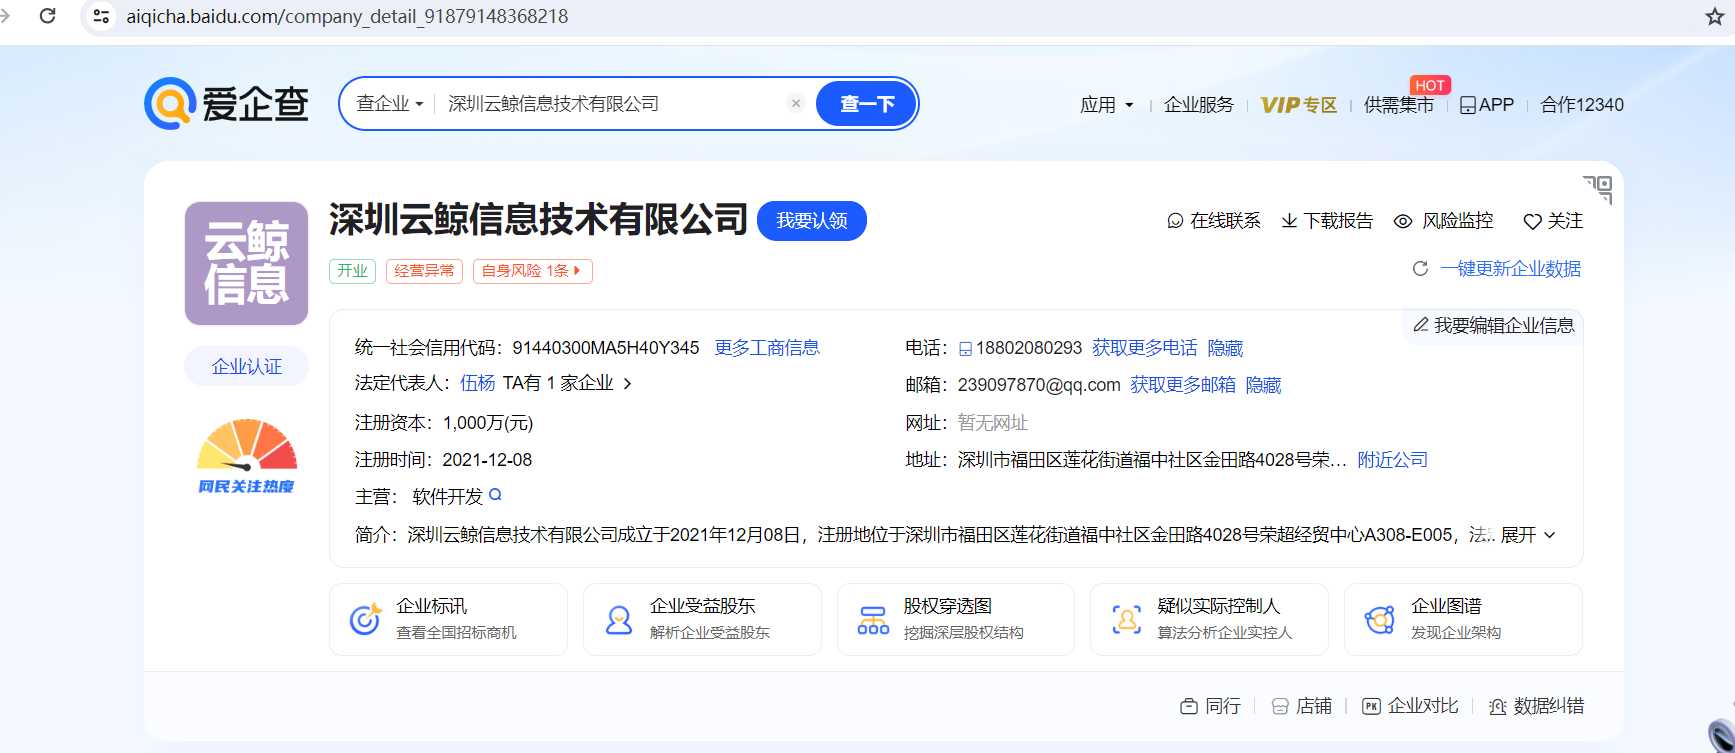 EM7304 深圳云鲸信息技术有限公司 扫地机器人 伍杨